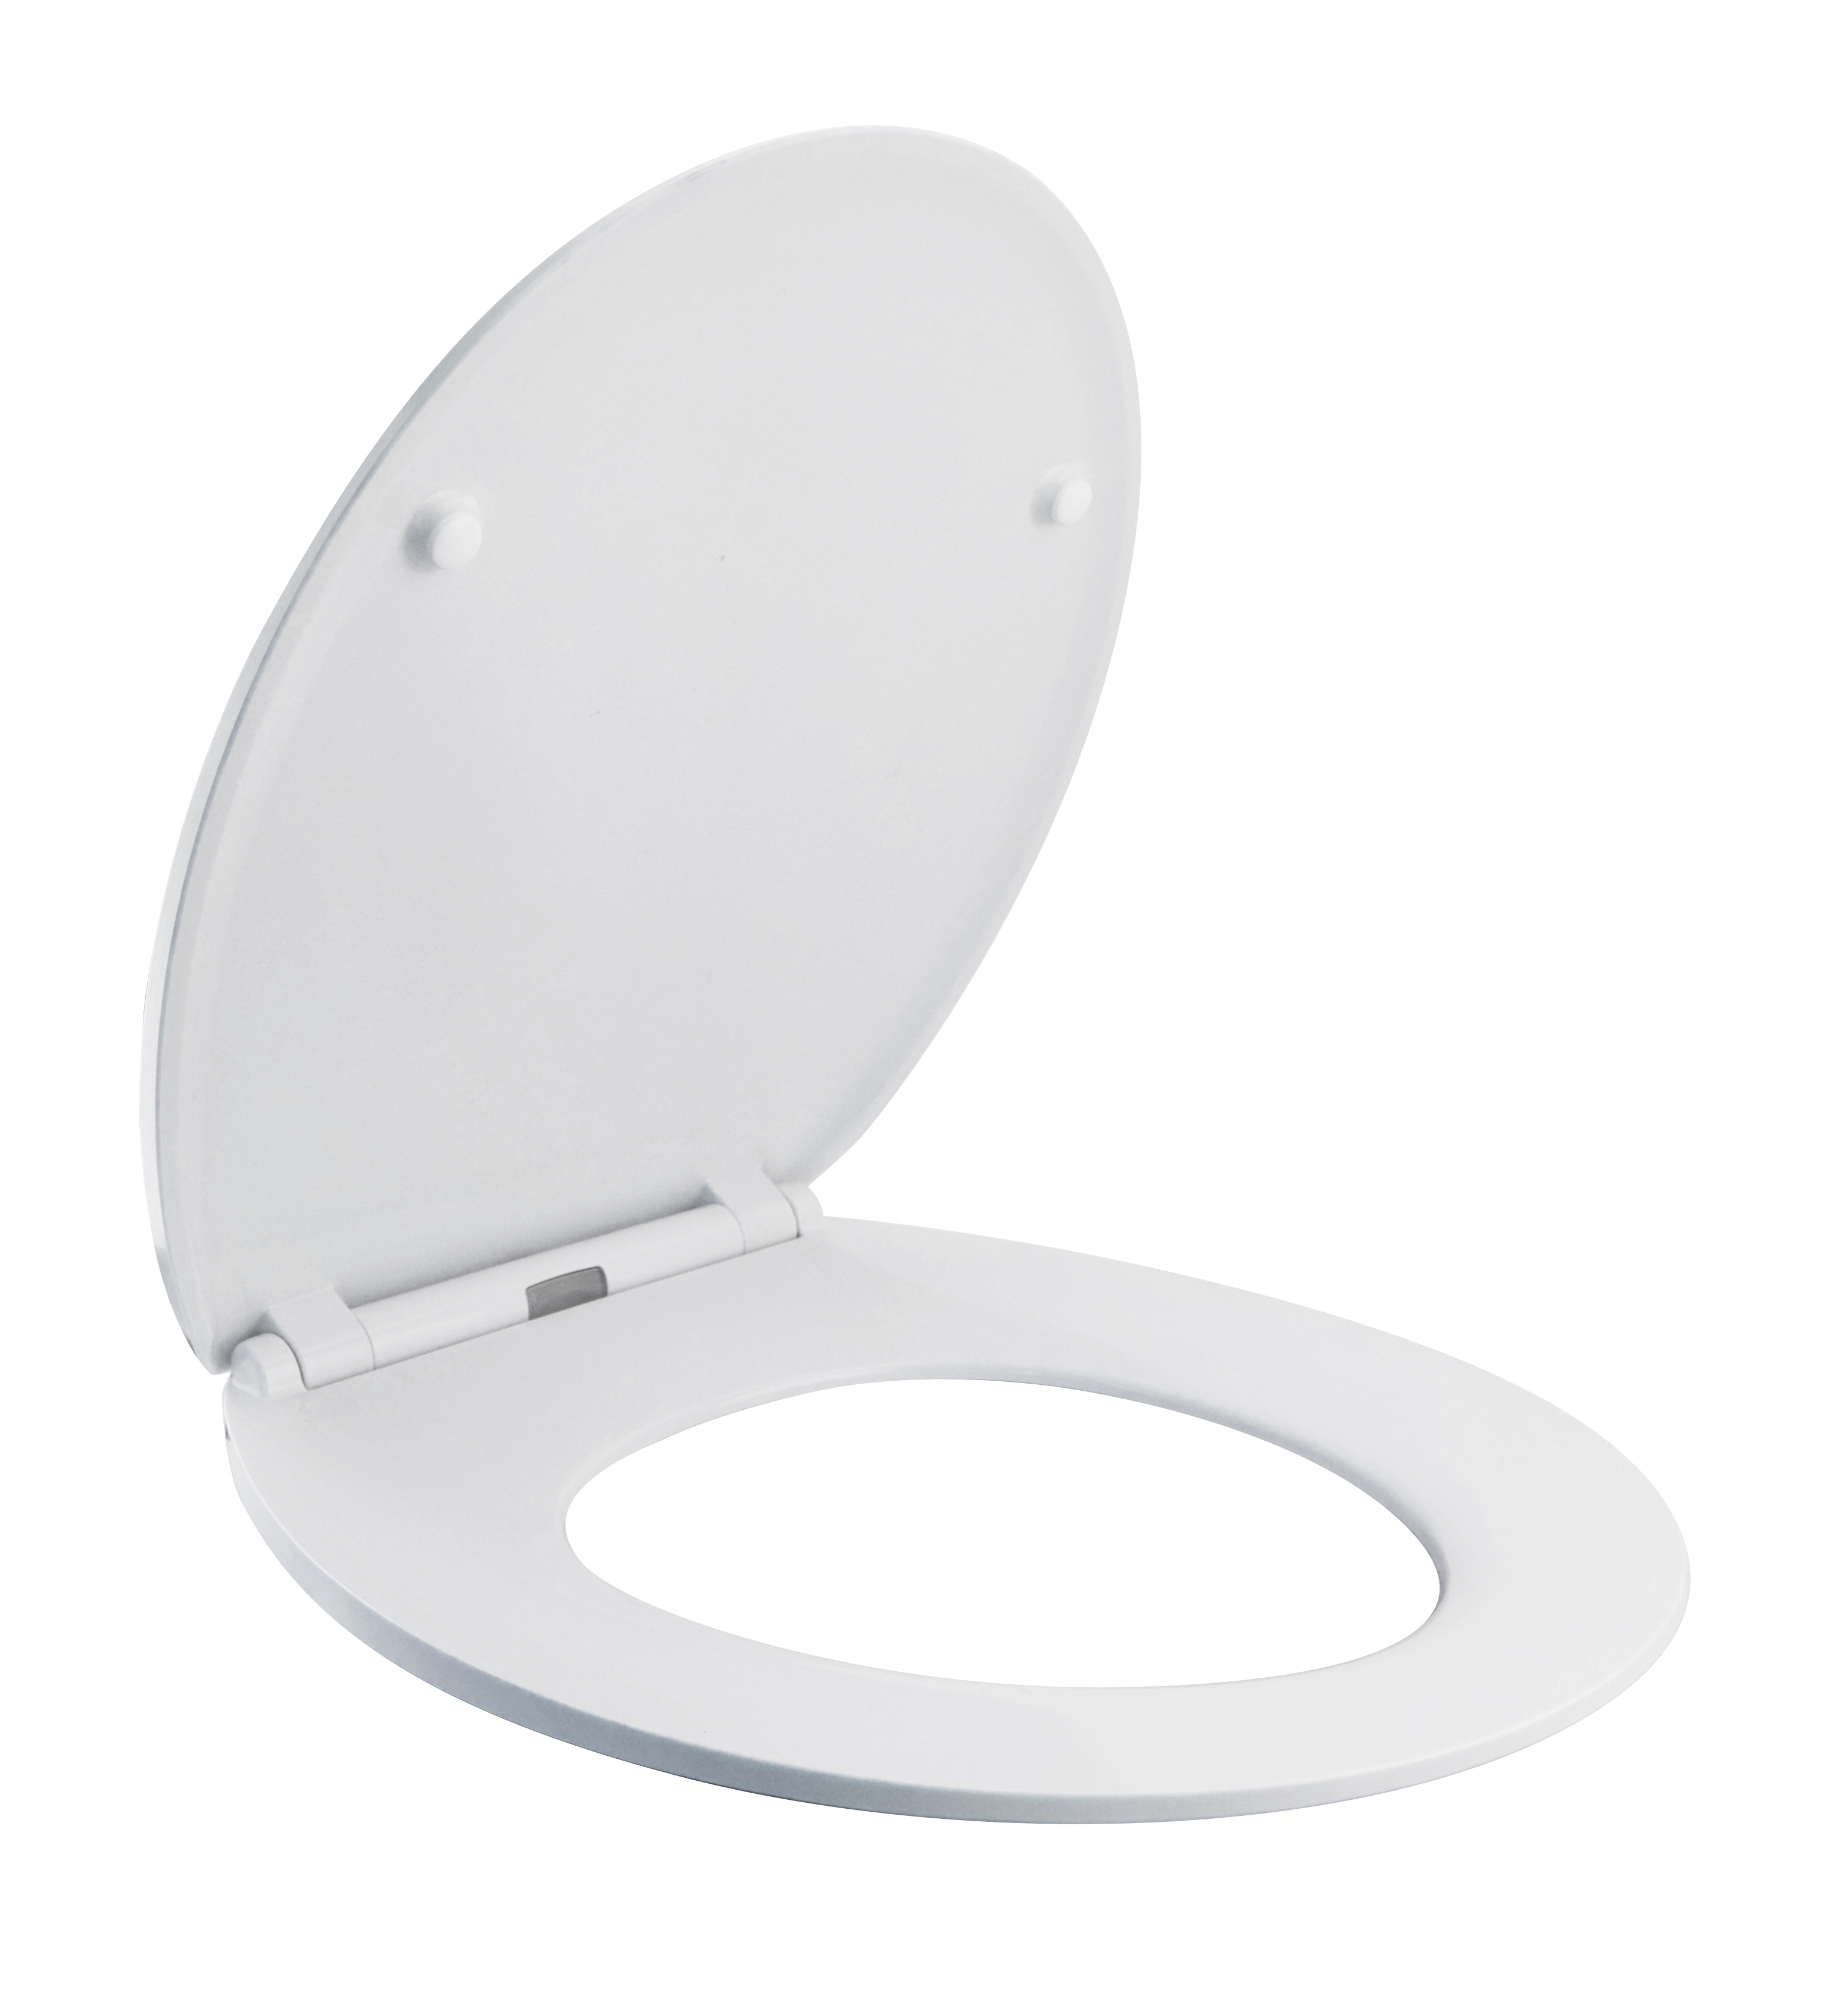 sedile WC con funzione di abbassamento cerniere regolabili facile fissaggio sopra e sotto ROMISA Coperchio WC Resine urea-formaldeide, O funzione di sgancio rapido forma O bianca